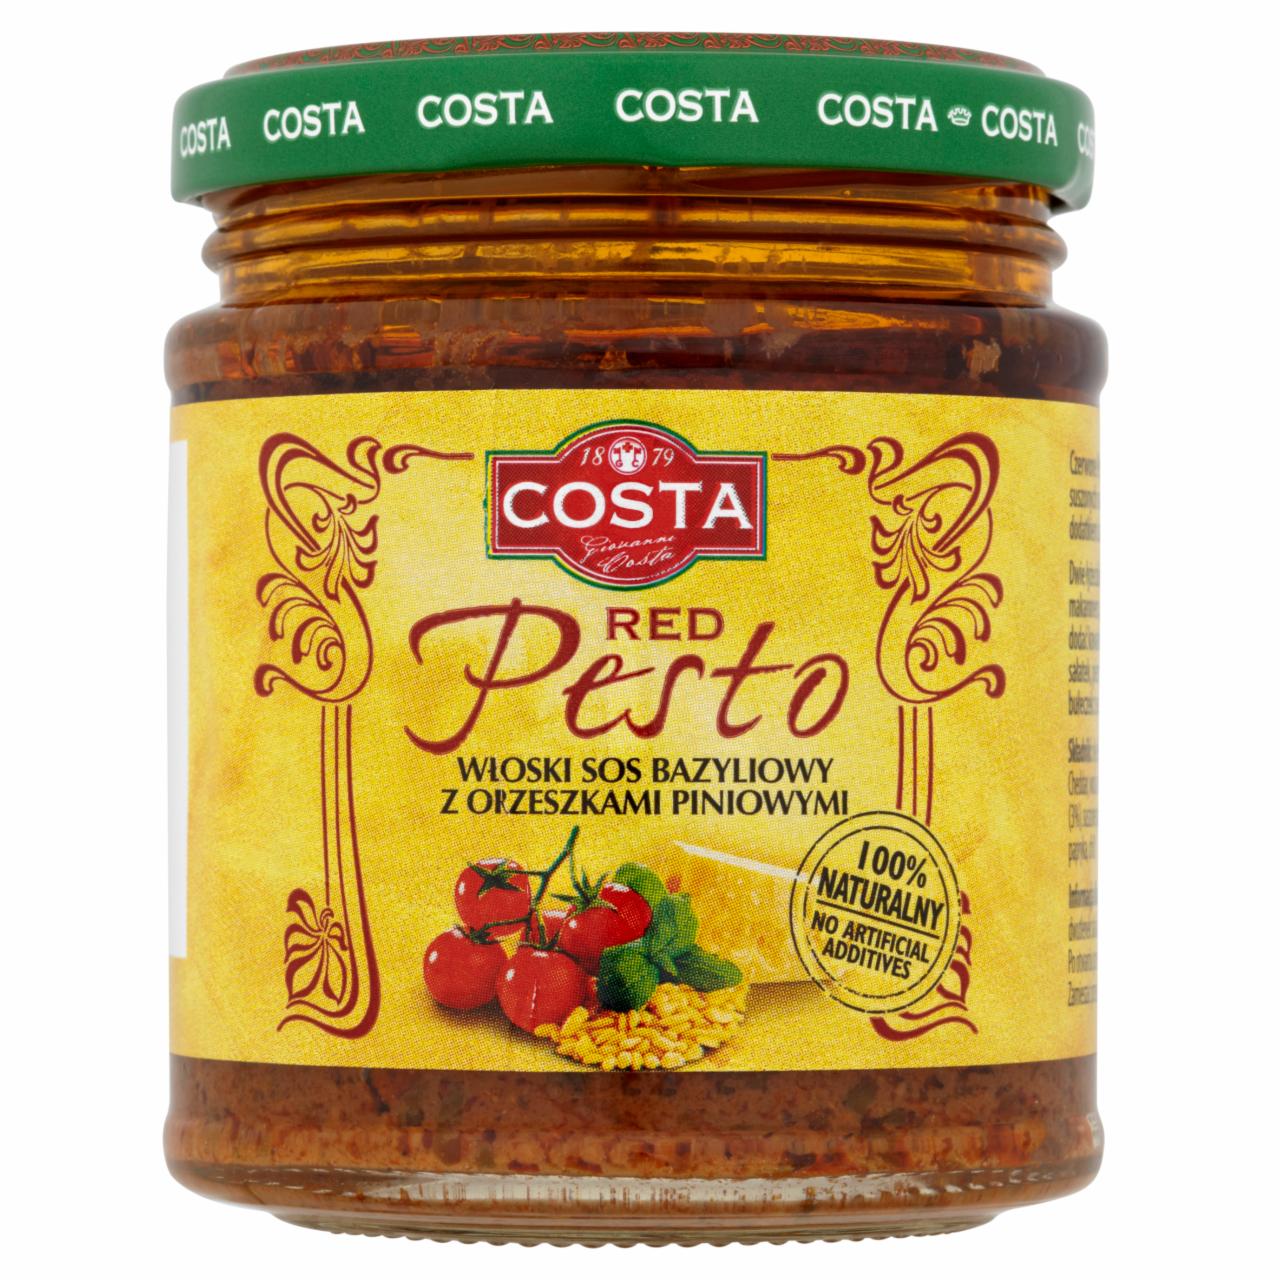 Zdjęcia - Costa Red Pesto Włoski sos bazyliowy z orzeszkami piniowymi 165 g